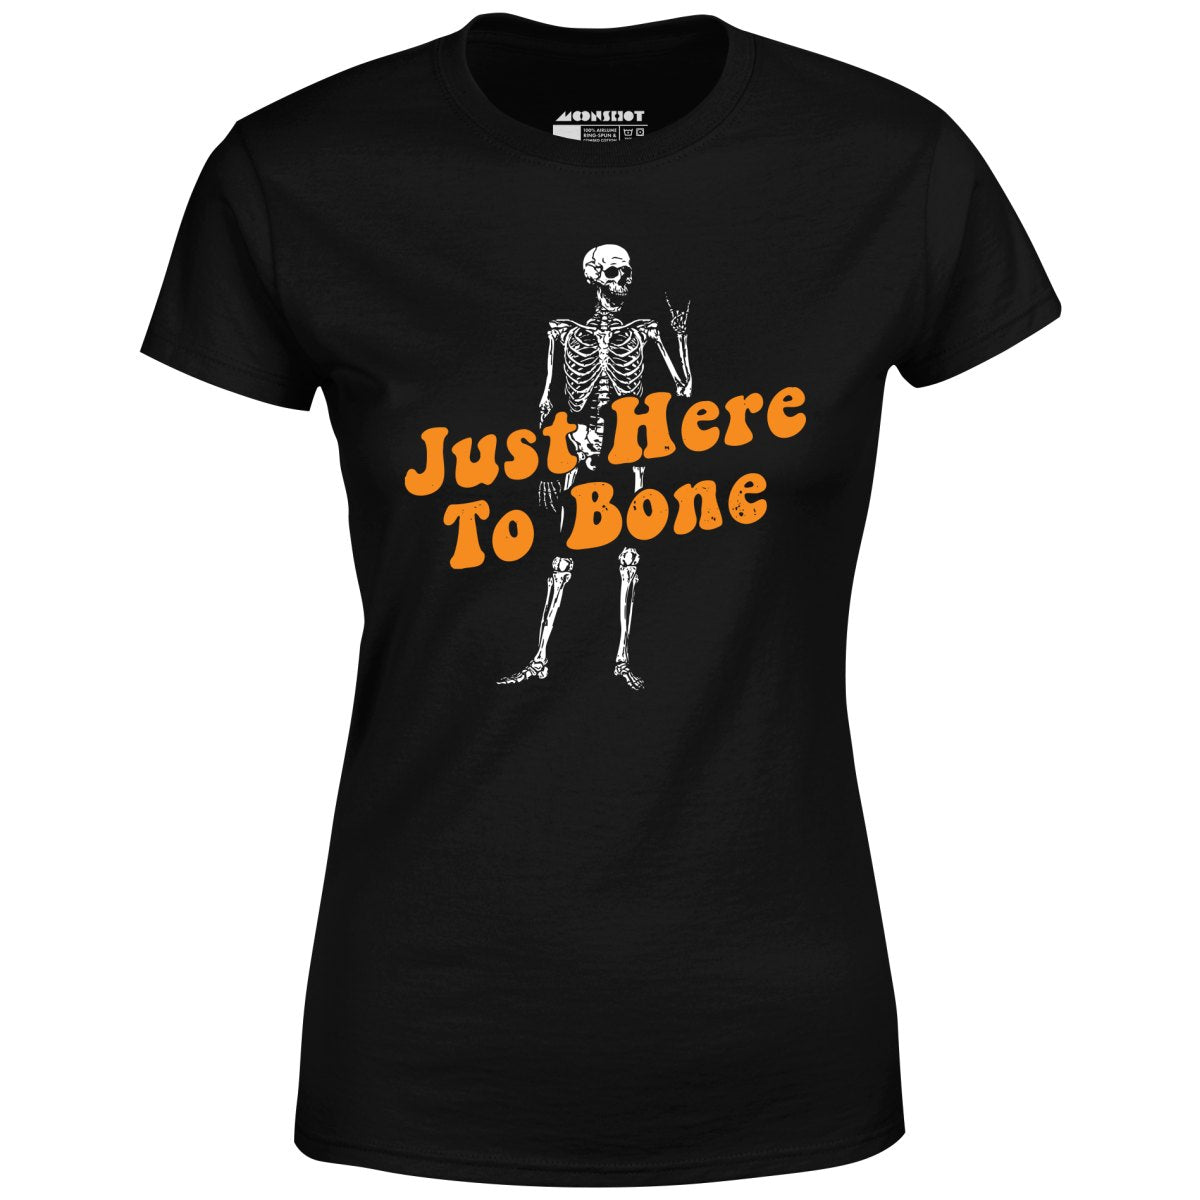 Just Here to Bone - Women's T-Shirt